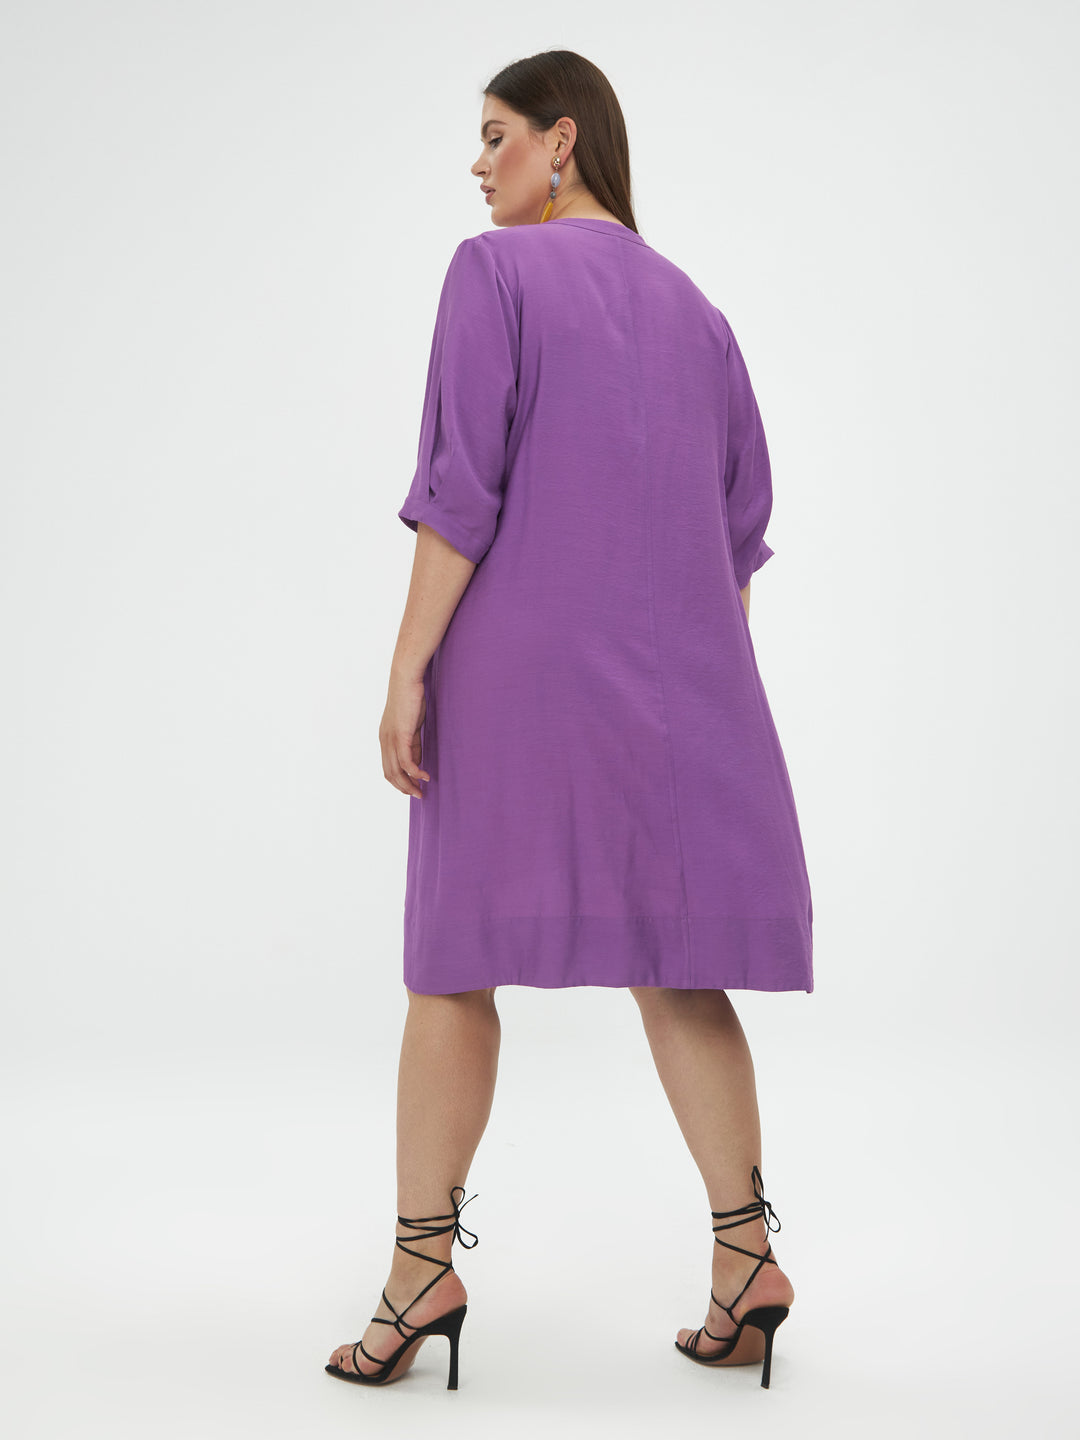 losse lila jurk - mat fashion - - grote maten - dameskleding - kledingwinkel - herent - leuven